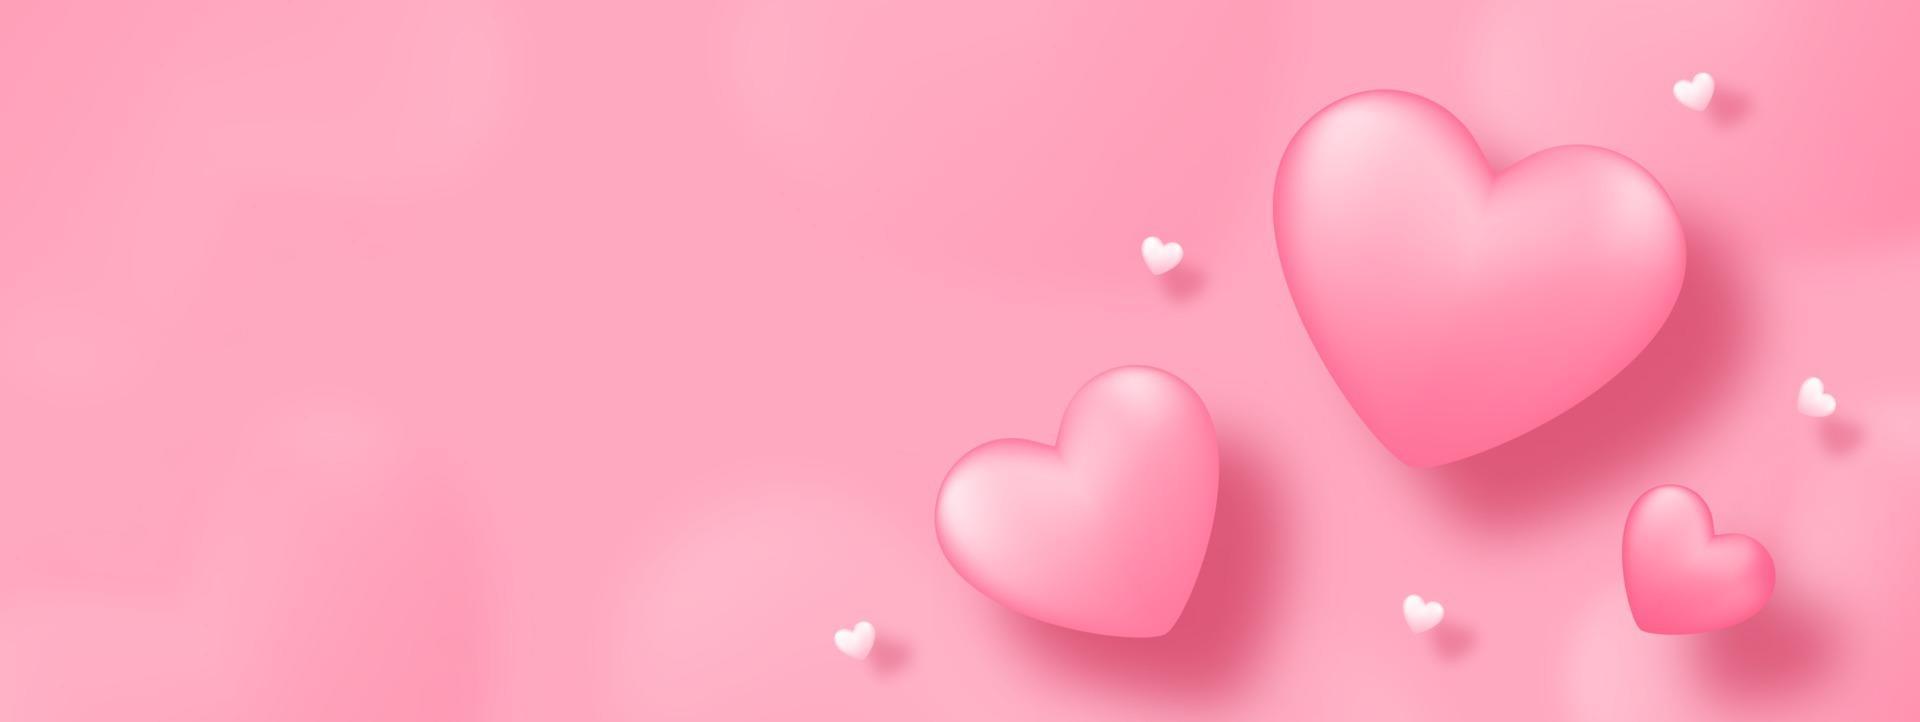 Papierkunst mit Herz auf rosa Hintergrund. Liebeskonzeptentwurf für glücklichen Muttertag, Valentinstag, Geburtstag. Banner- und Grußschablonendesign. vektor